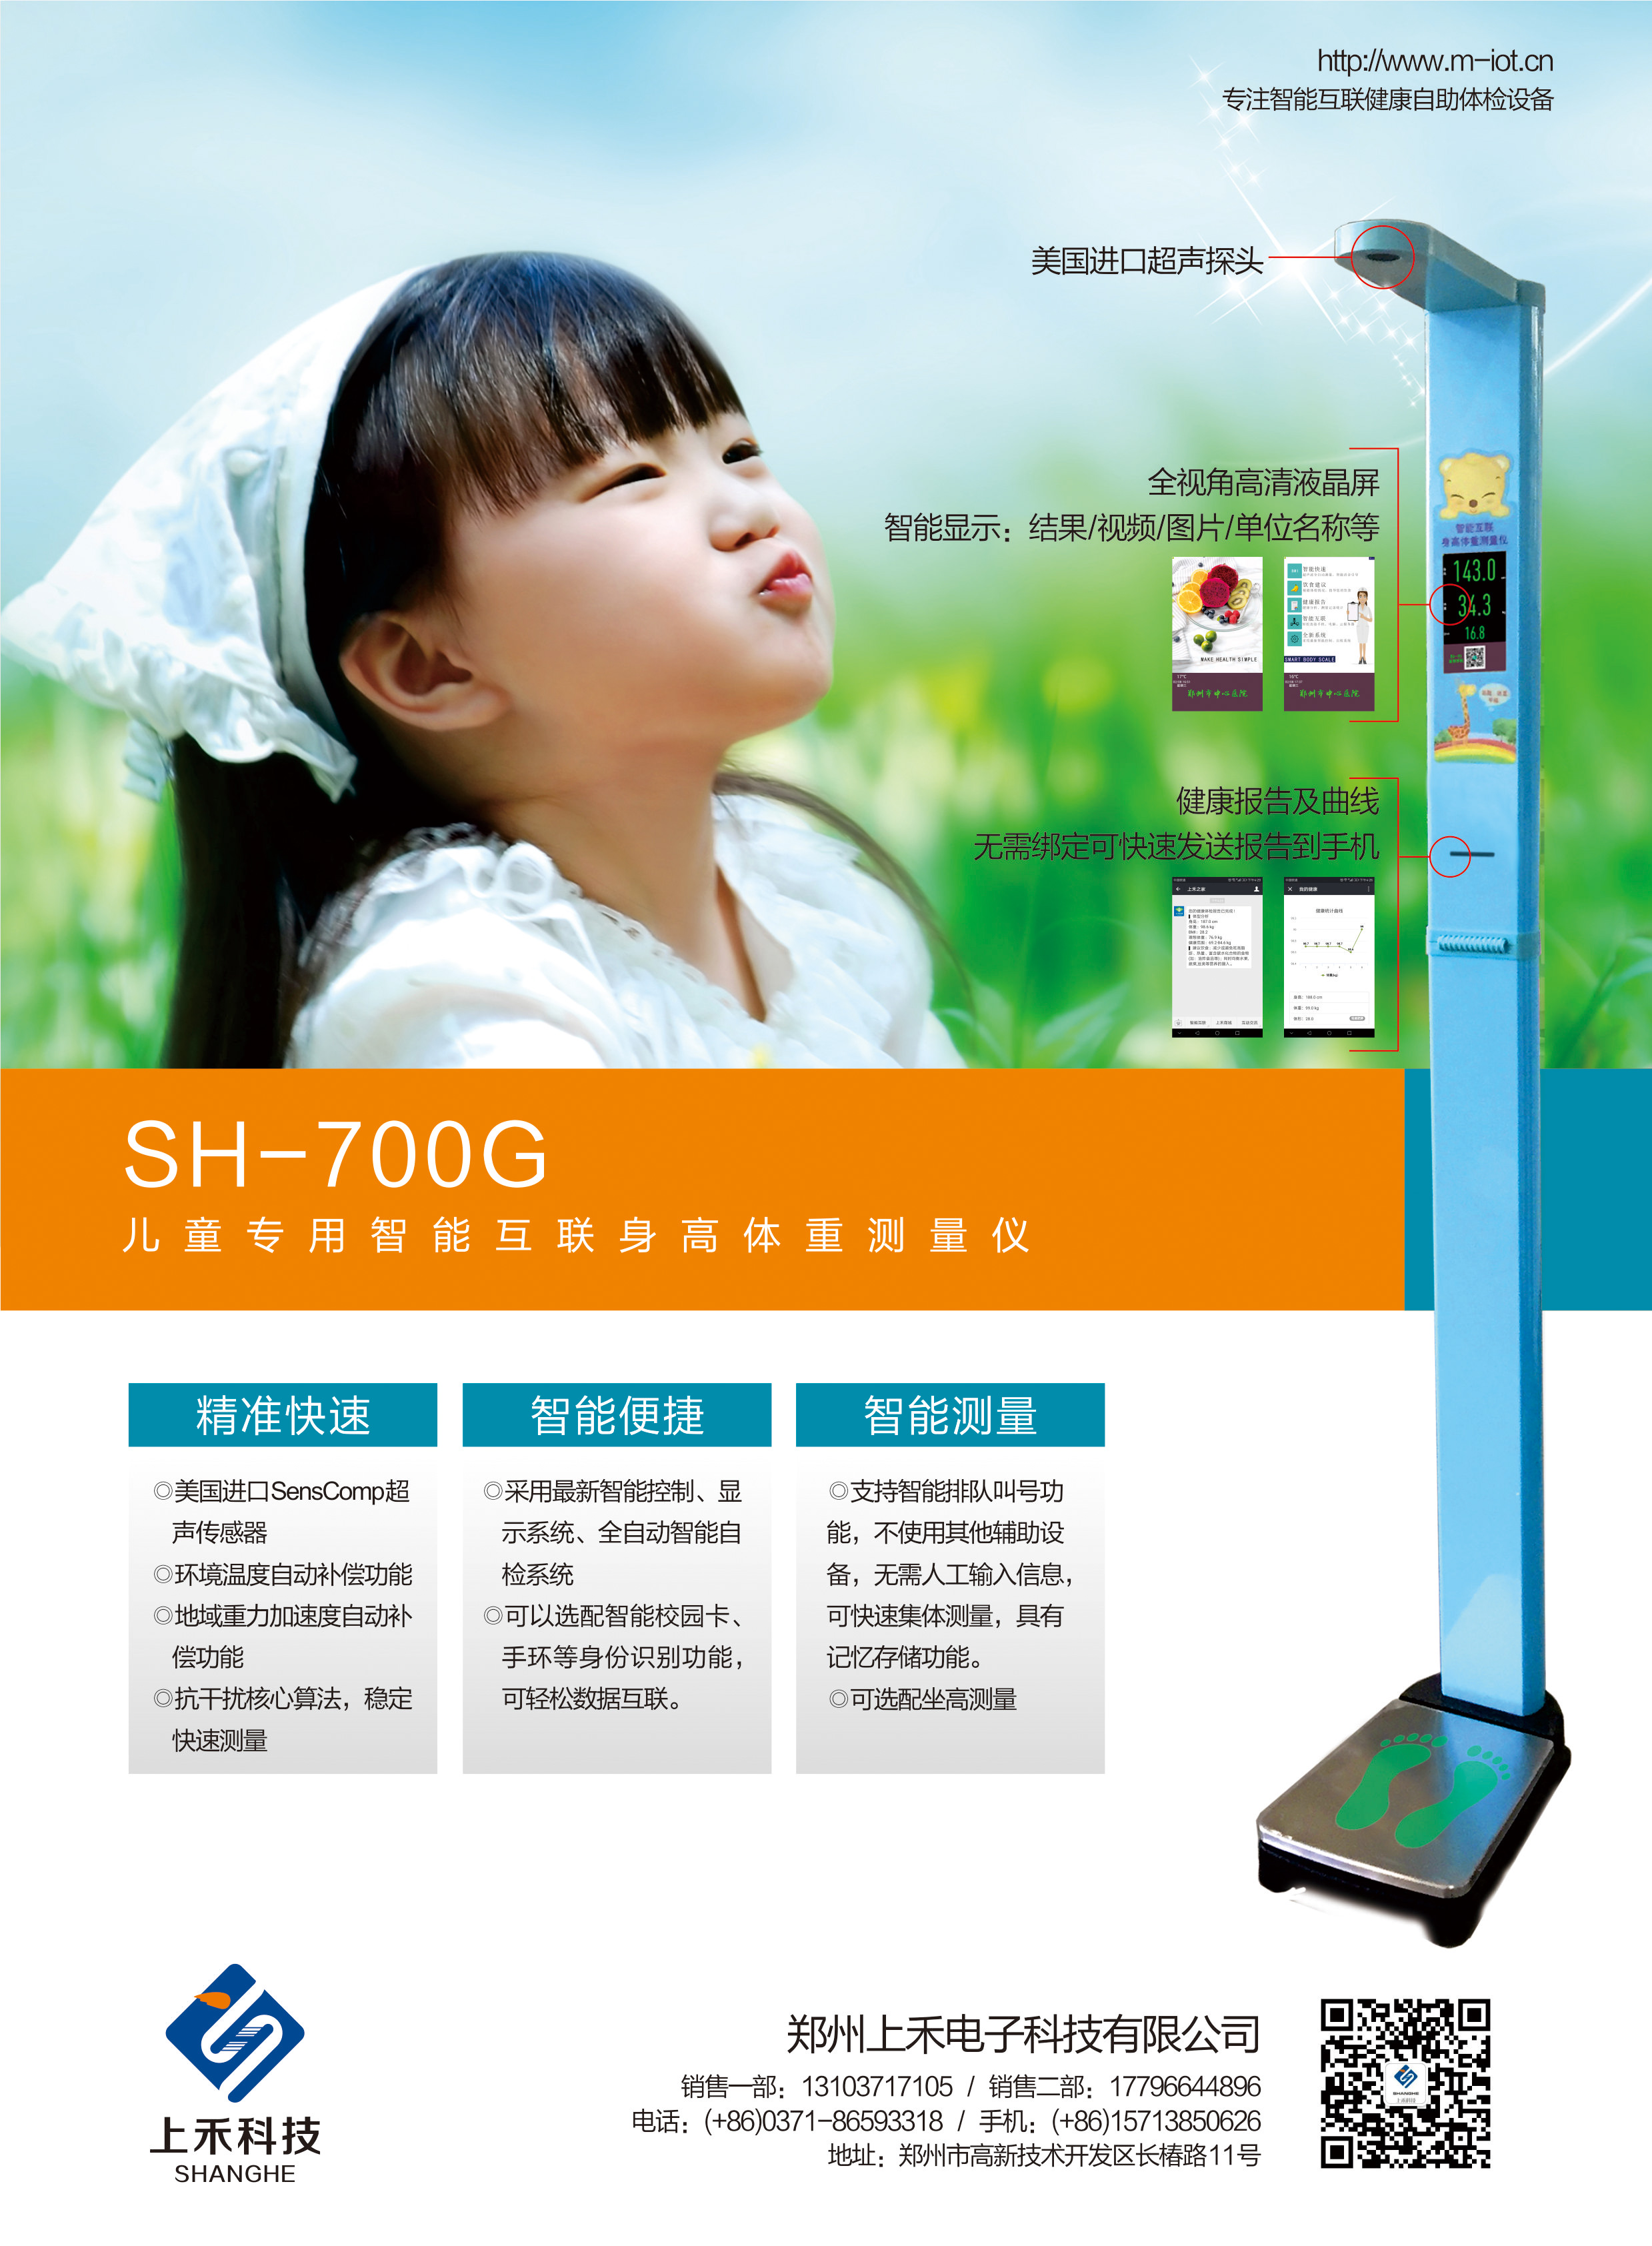 SH-700G儿童专用智能互联身高体重测量仪